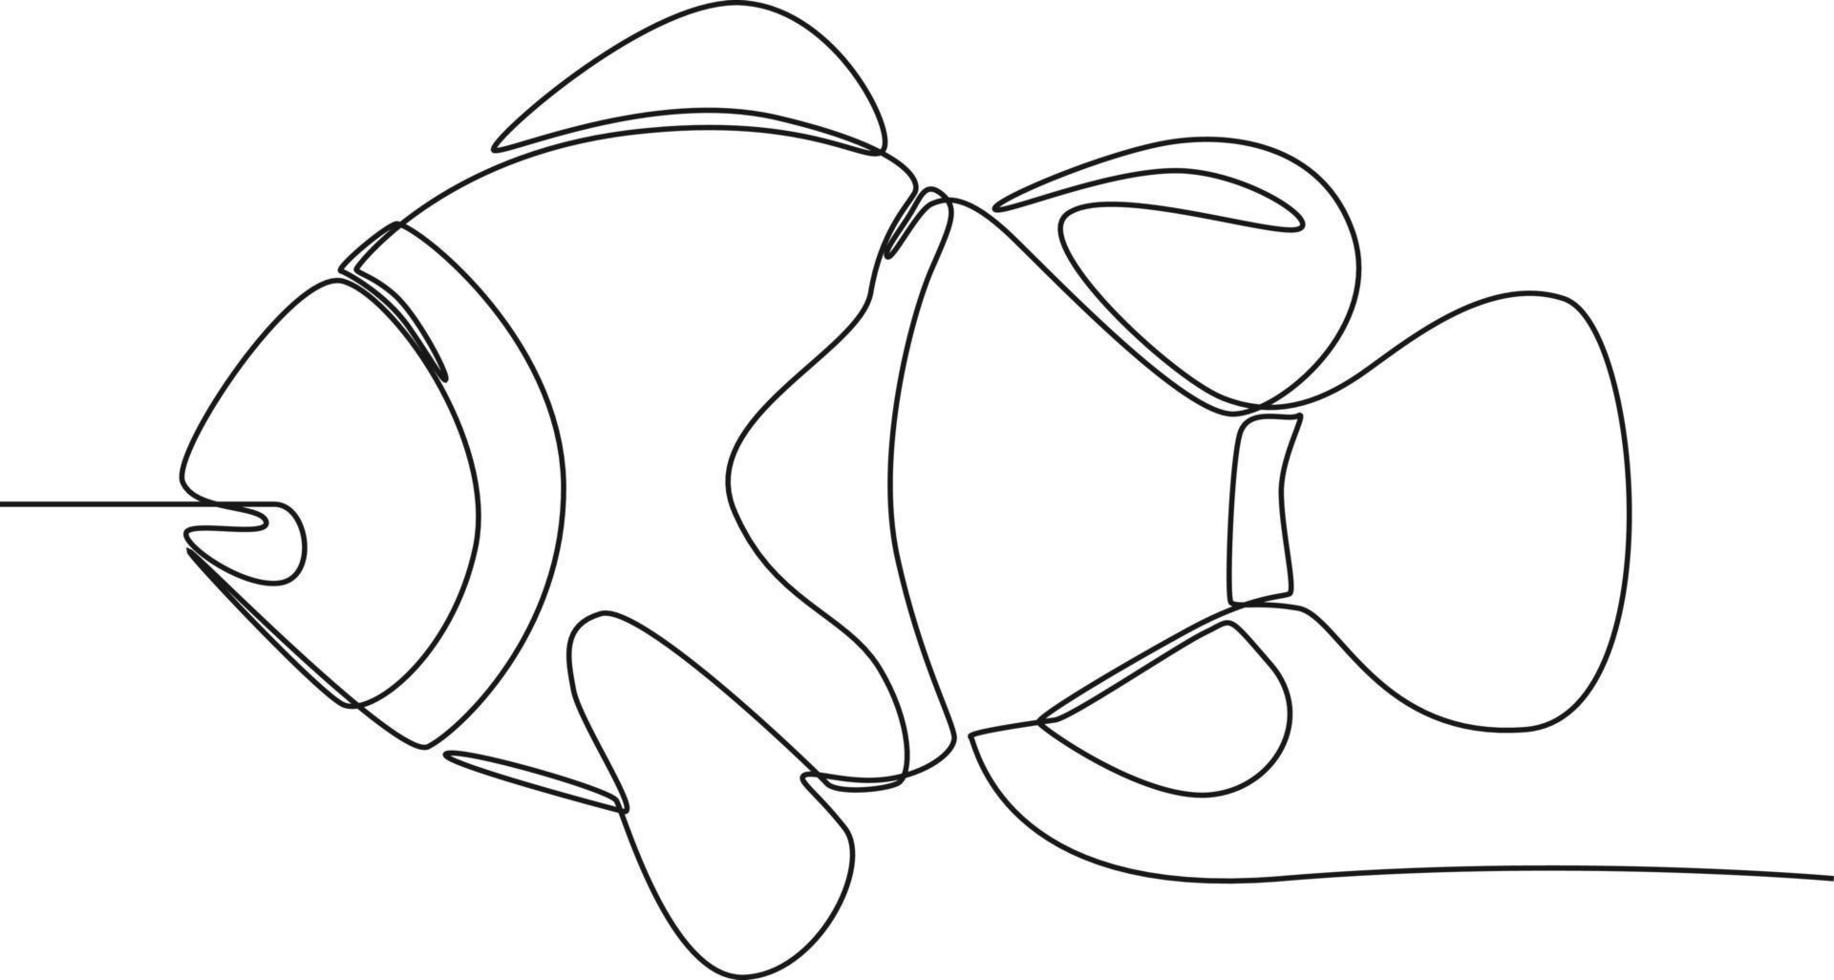 kontinuerlig en rad ritning klo fisk på vitt. internationella havsdagen. enda rad rita design vektorgrafisk illustration. vektor